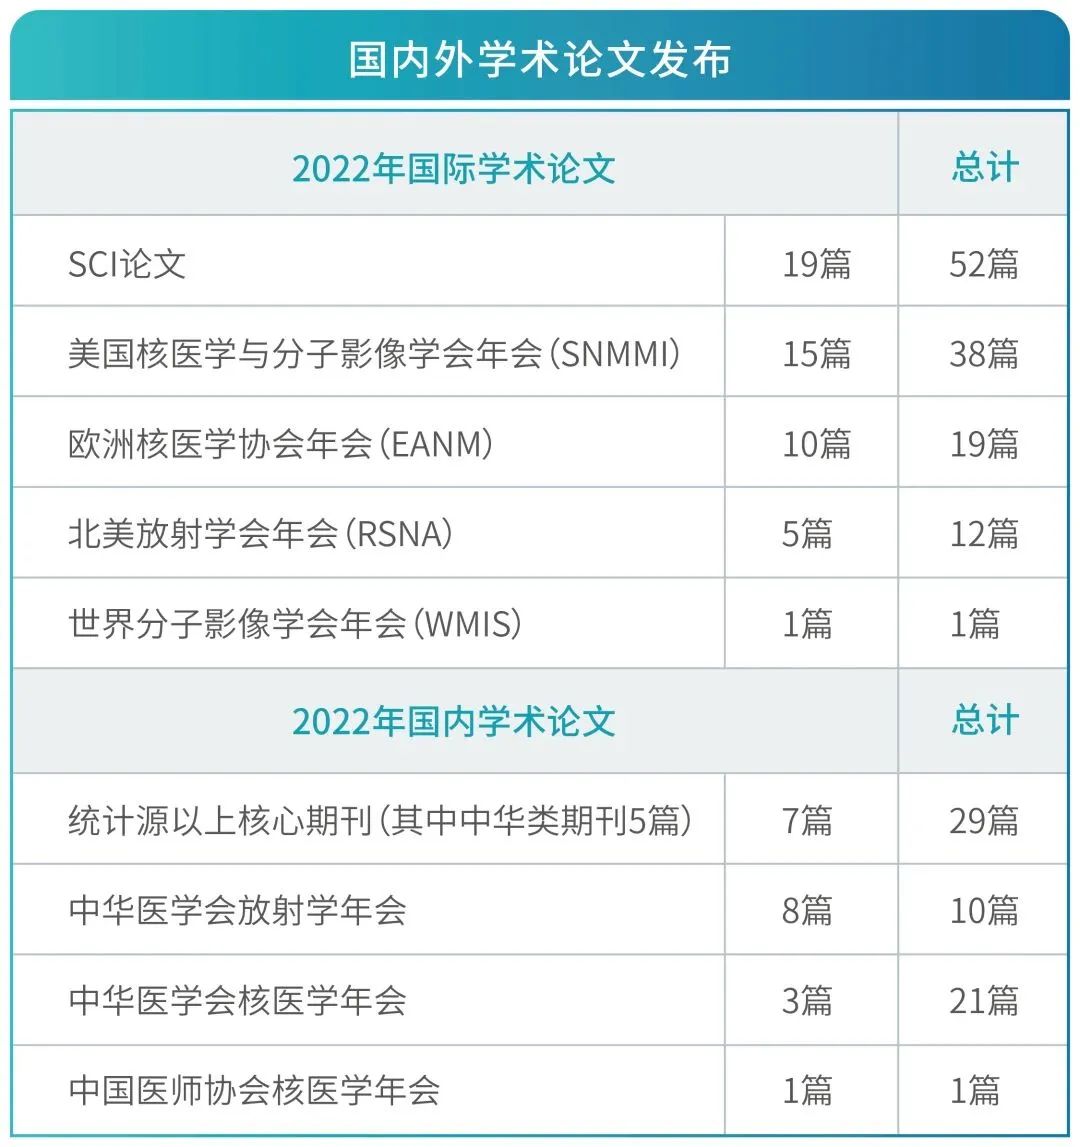 创新·突破 | 回顾 2022，上海全景医学影像诊断中心的科研攻关